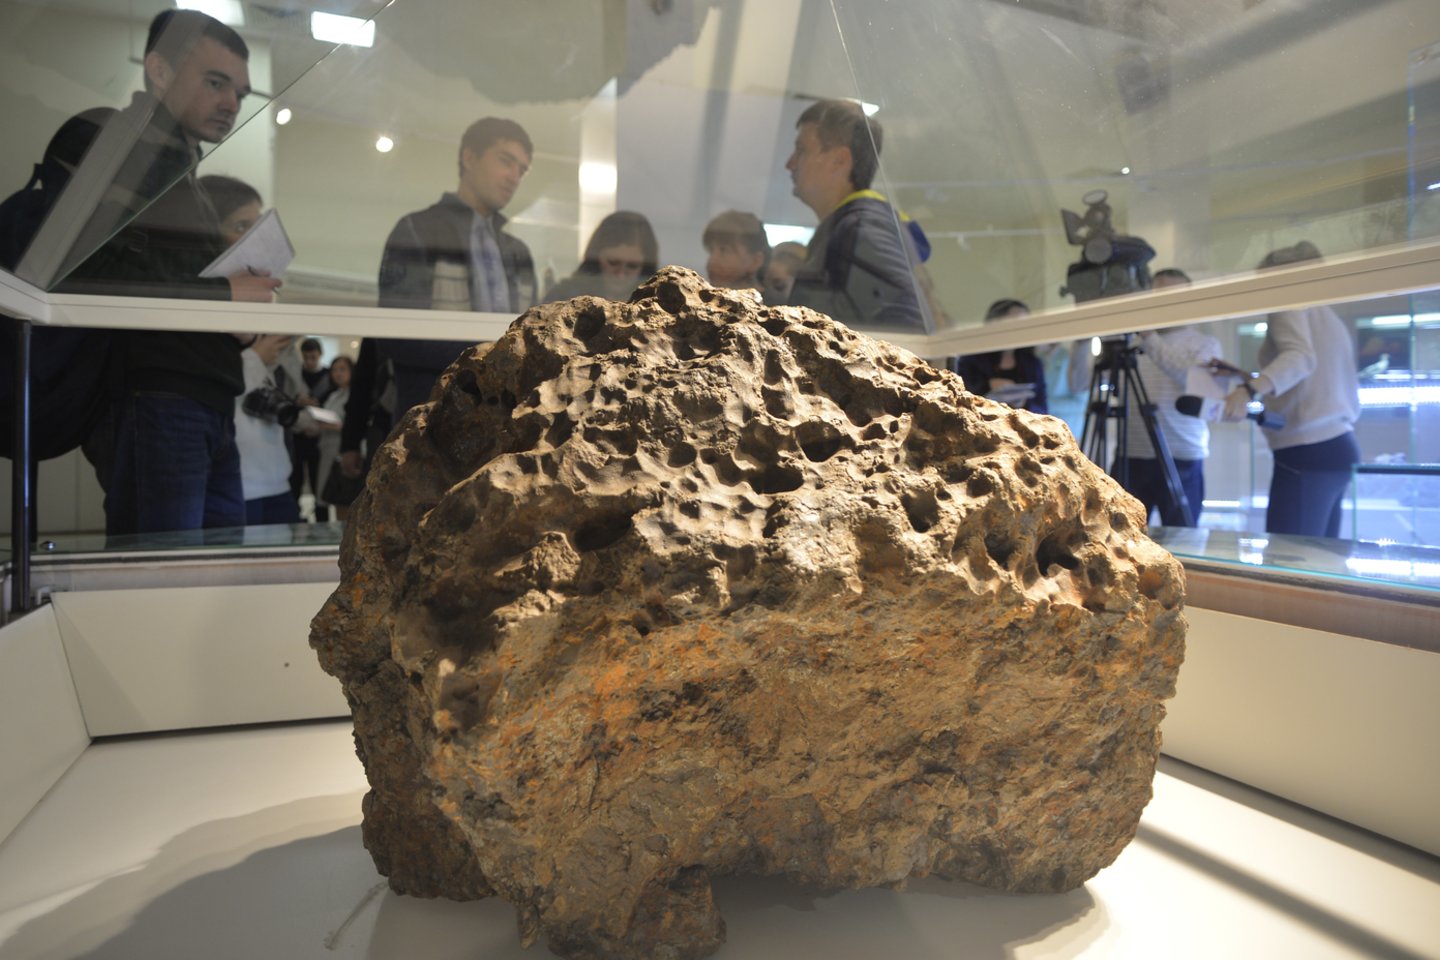  Pietų Uralo muziejuje saugomas 500 kg svorio meteorito fragmentas, sužvejotas ežere po kelių mėnesių nuo žymiojo 2013 m. sprogimo.<br> Reuters / Scanpix nuotr.